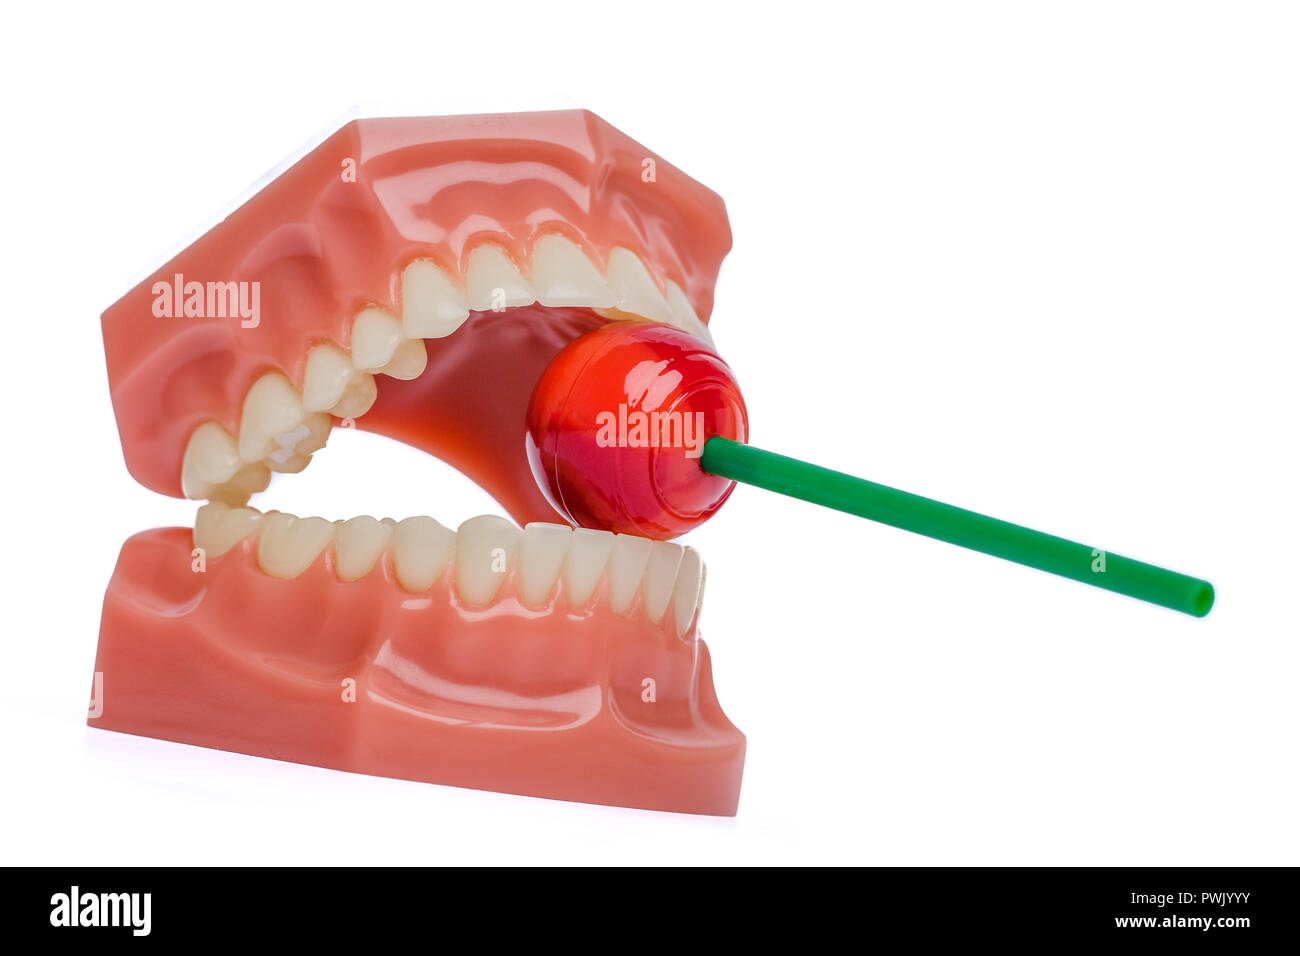 Denti ortodontico modello con red lollipop Foto Stock